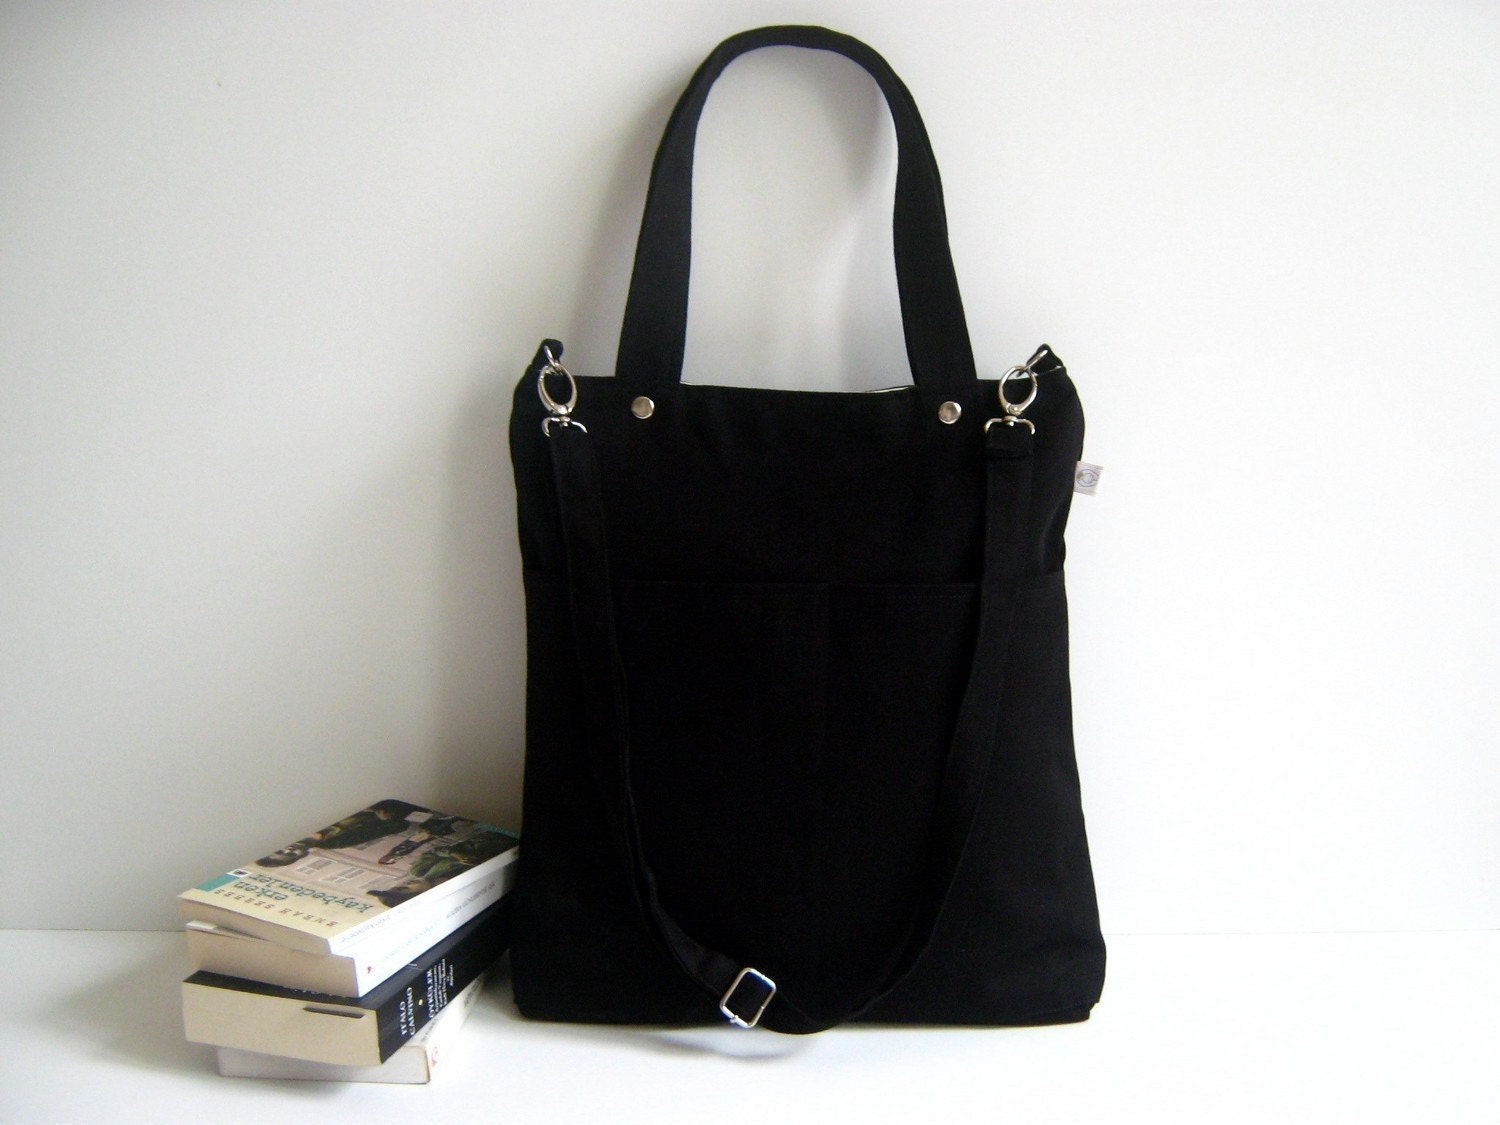 Last One Simply Tote Bag in black unisex multi